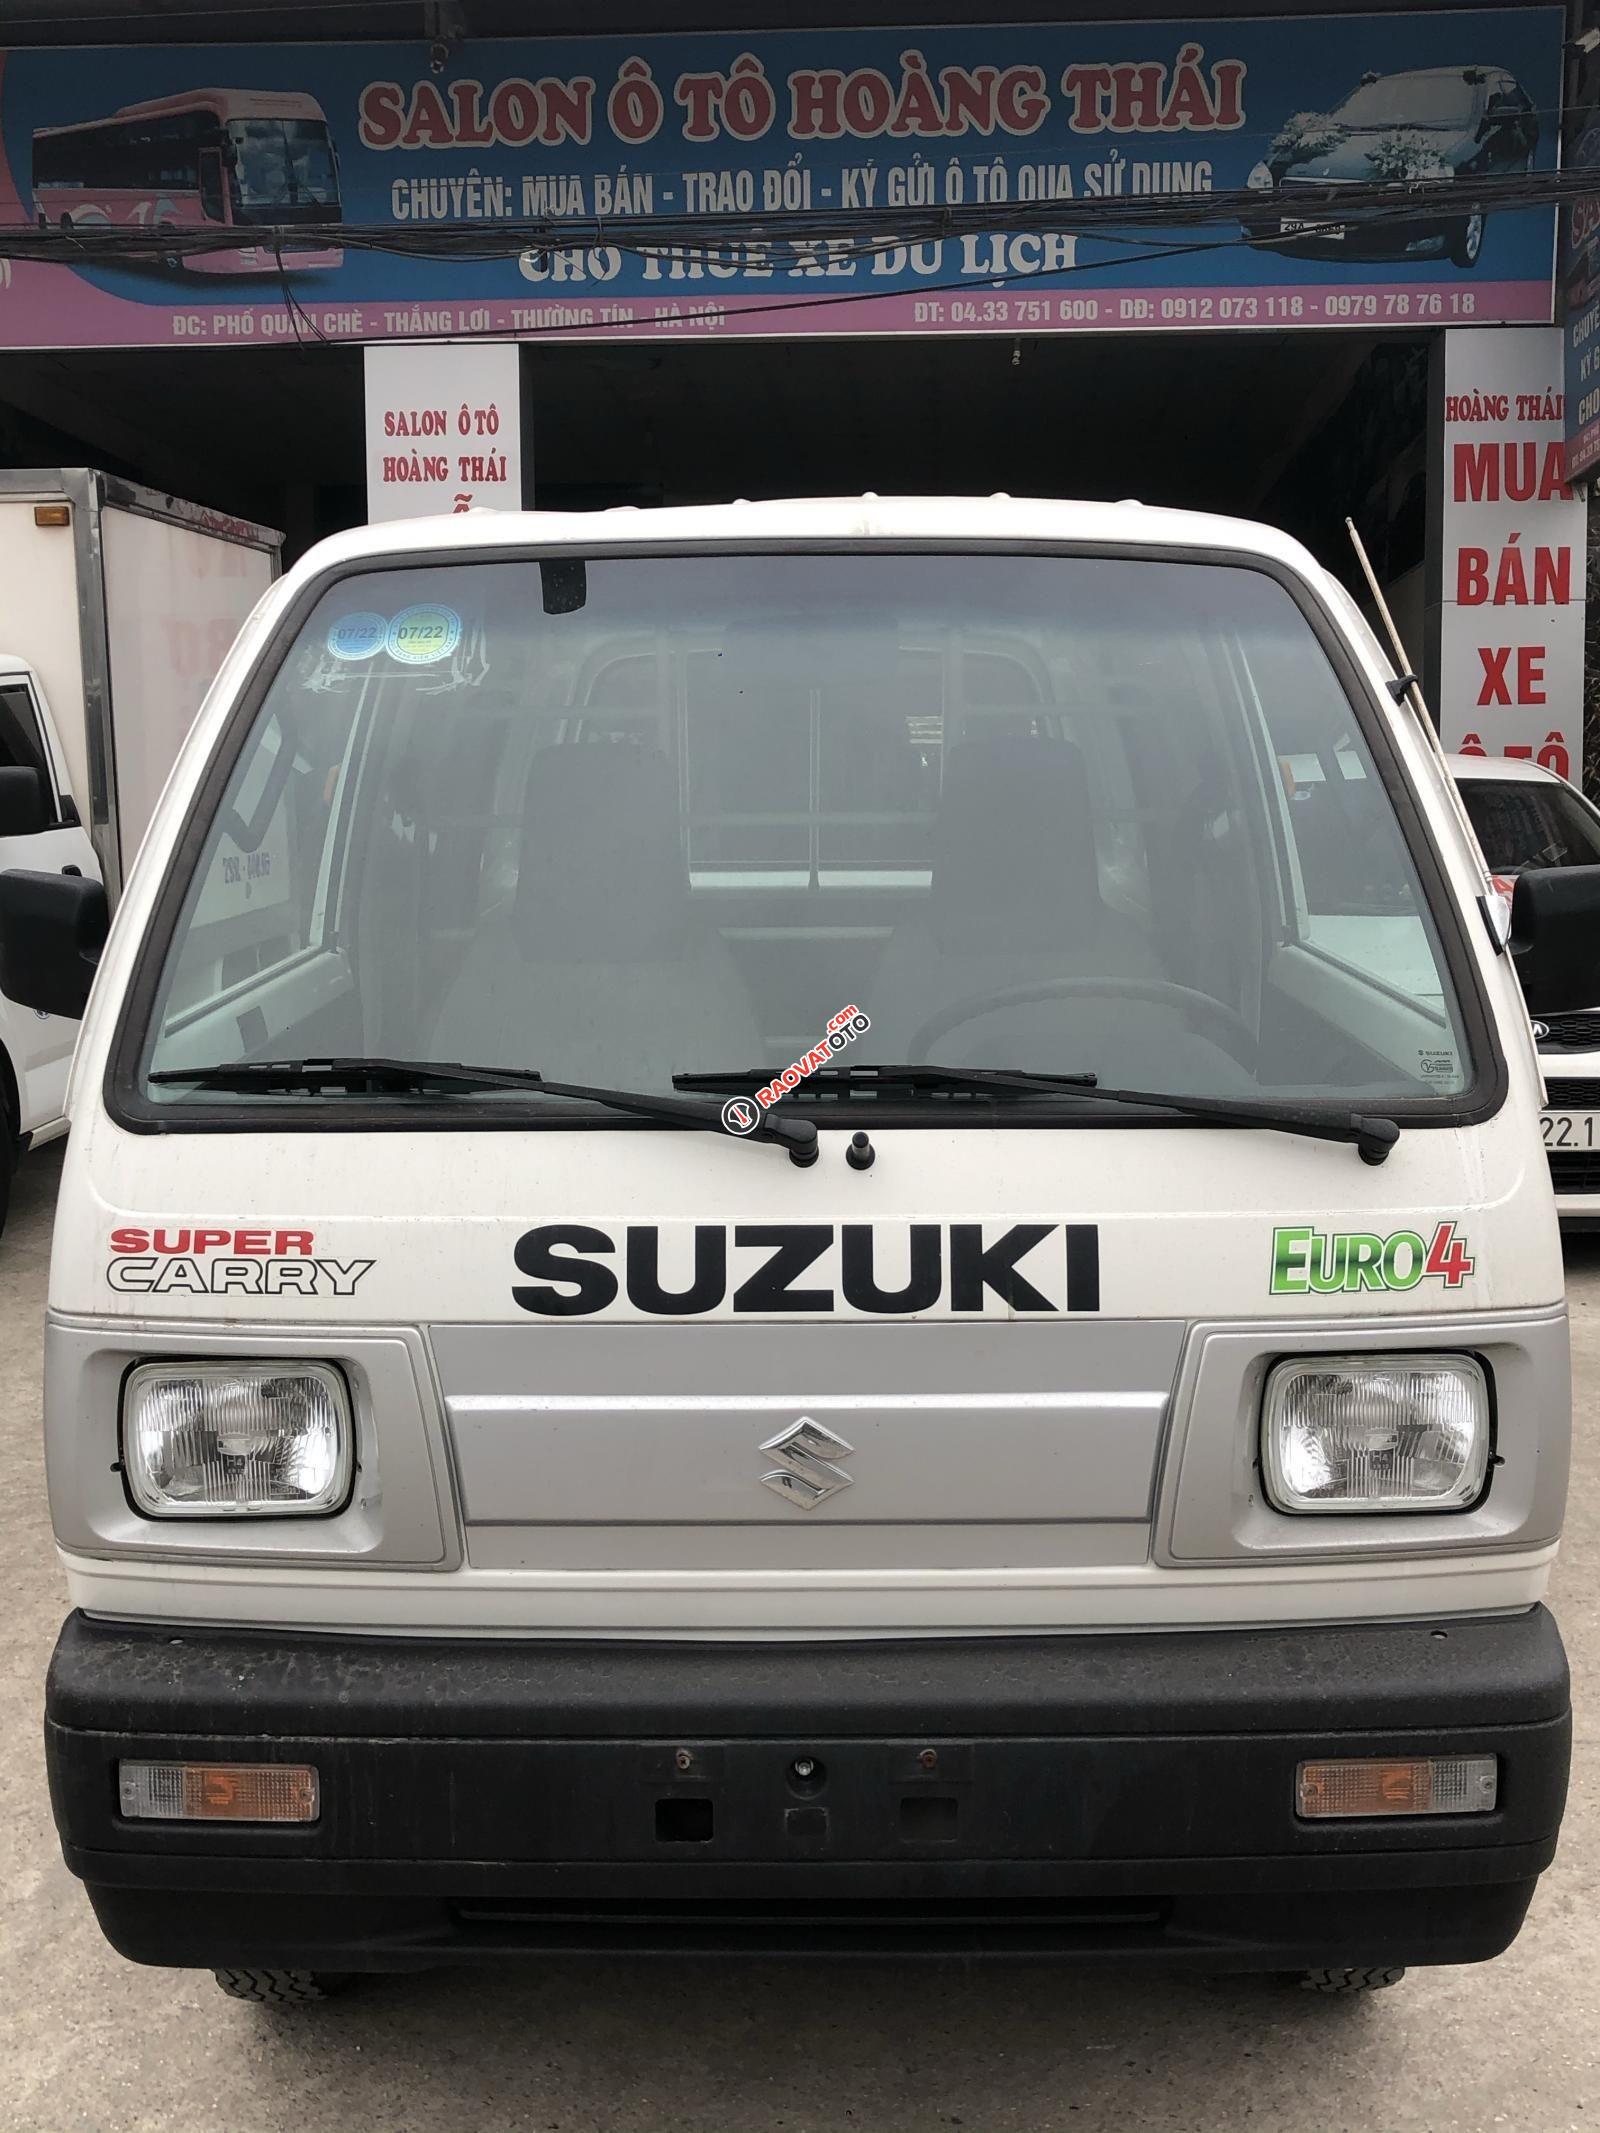 Cần bán xe Suzuki Super Carry Van đăng ký lần đầu 2019, ít sử dụng, giá tốt 225tr-8